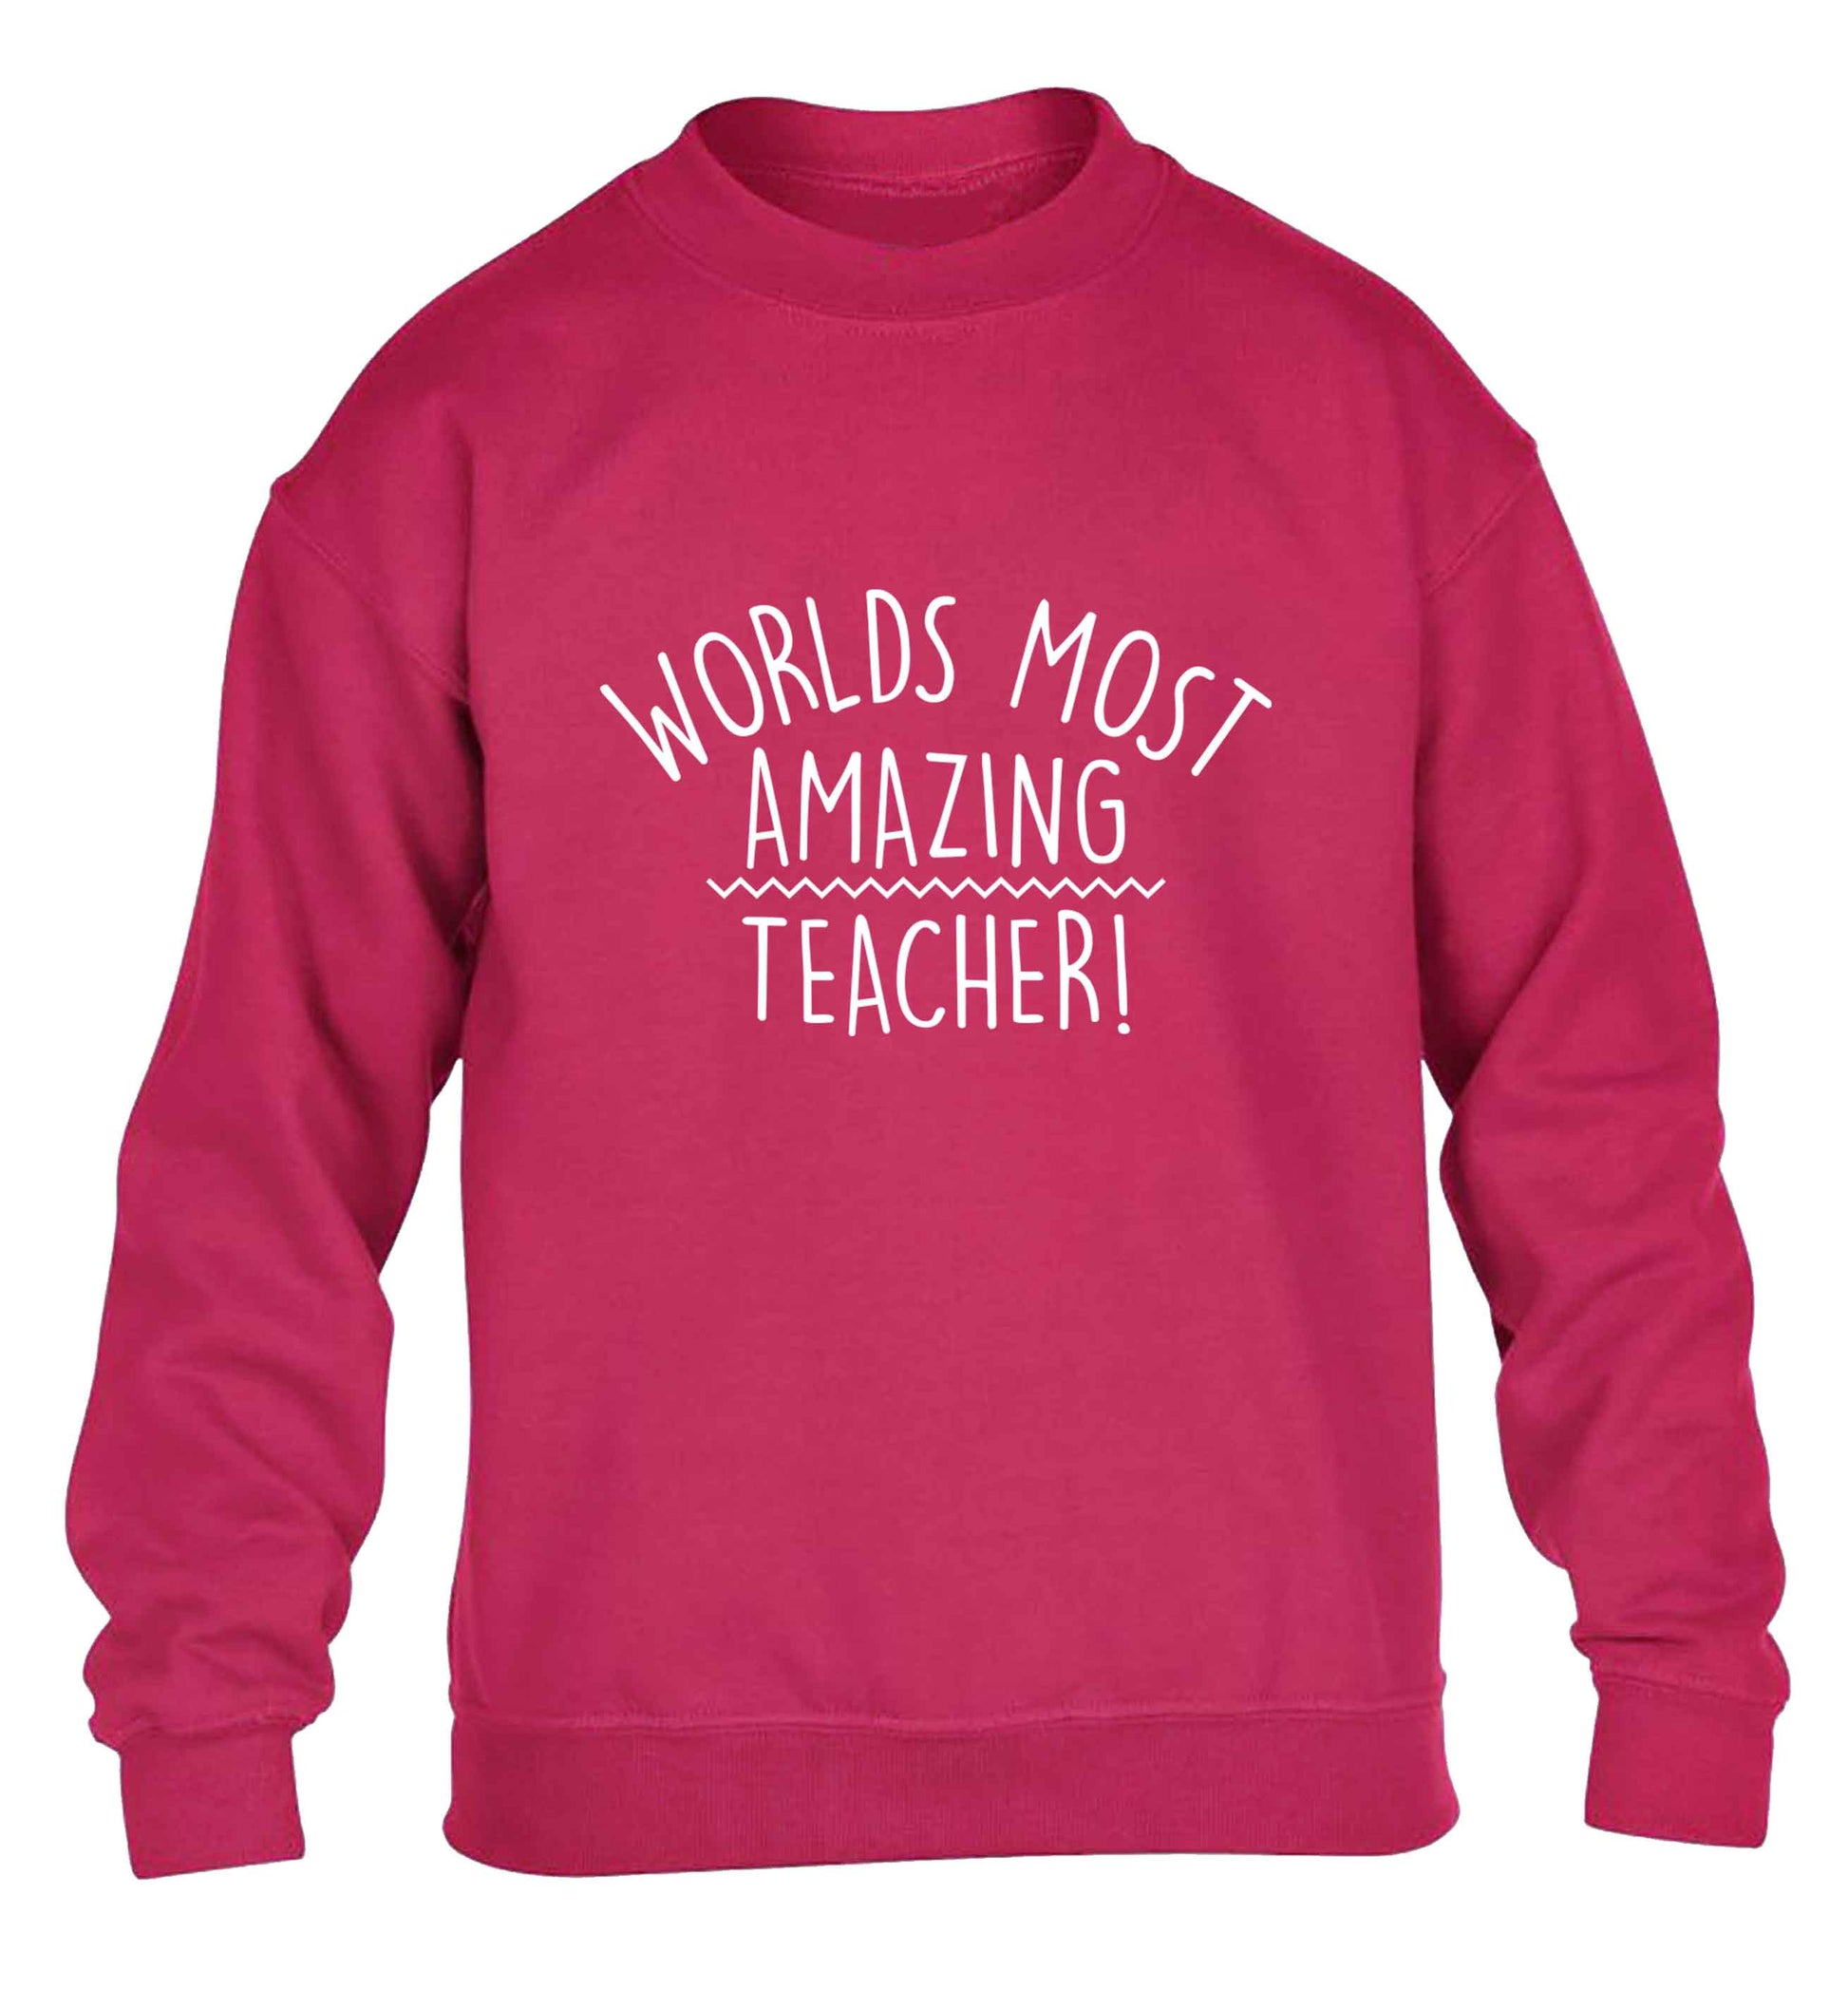 Worlds most amazing teacher children's pink sweater 12-13 Years